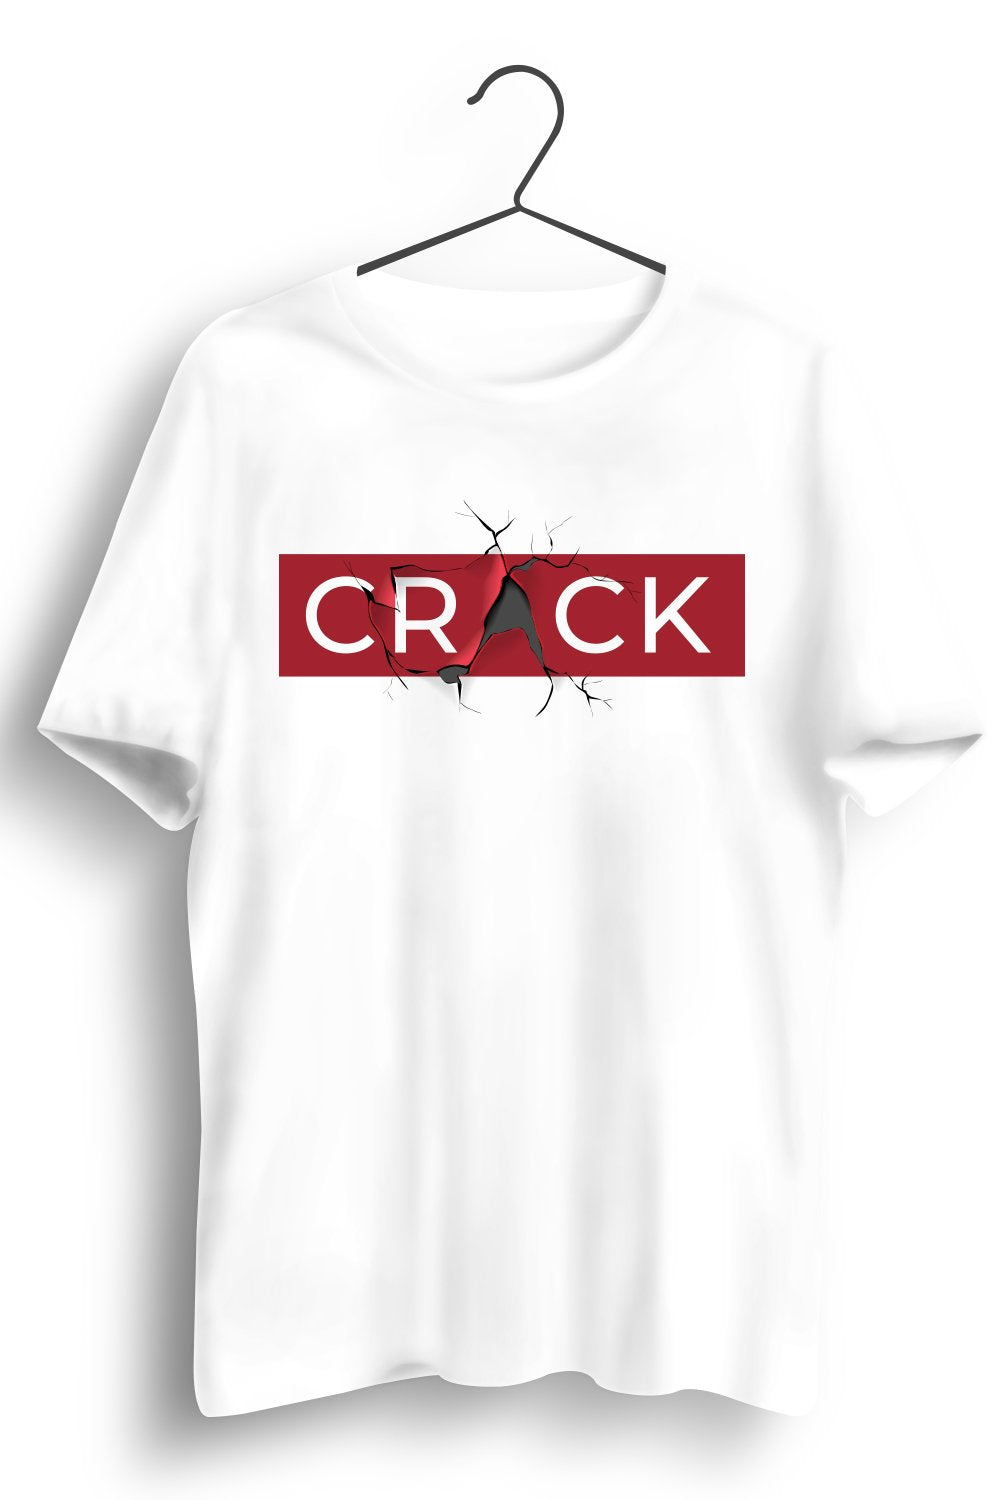 Crack Graphic Printed White Tshirt